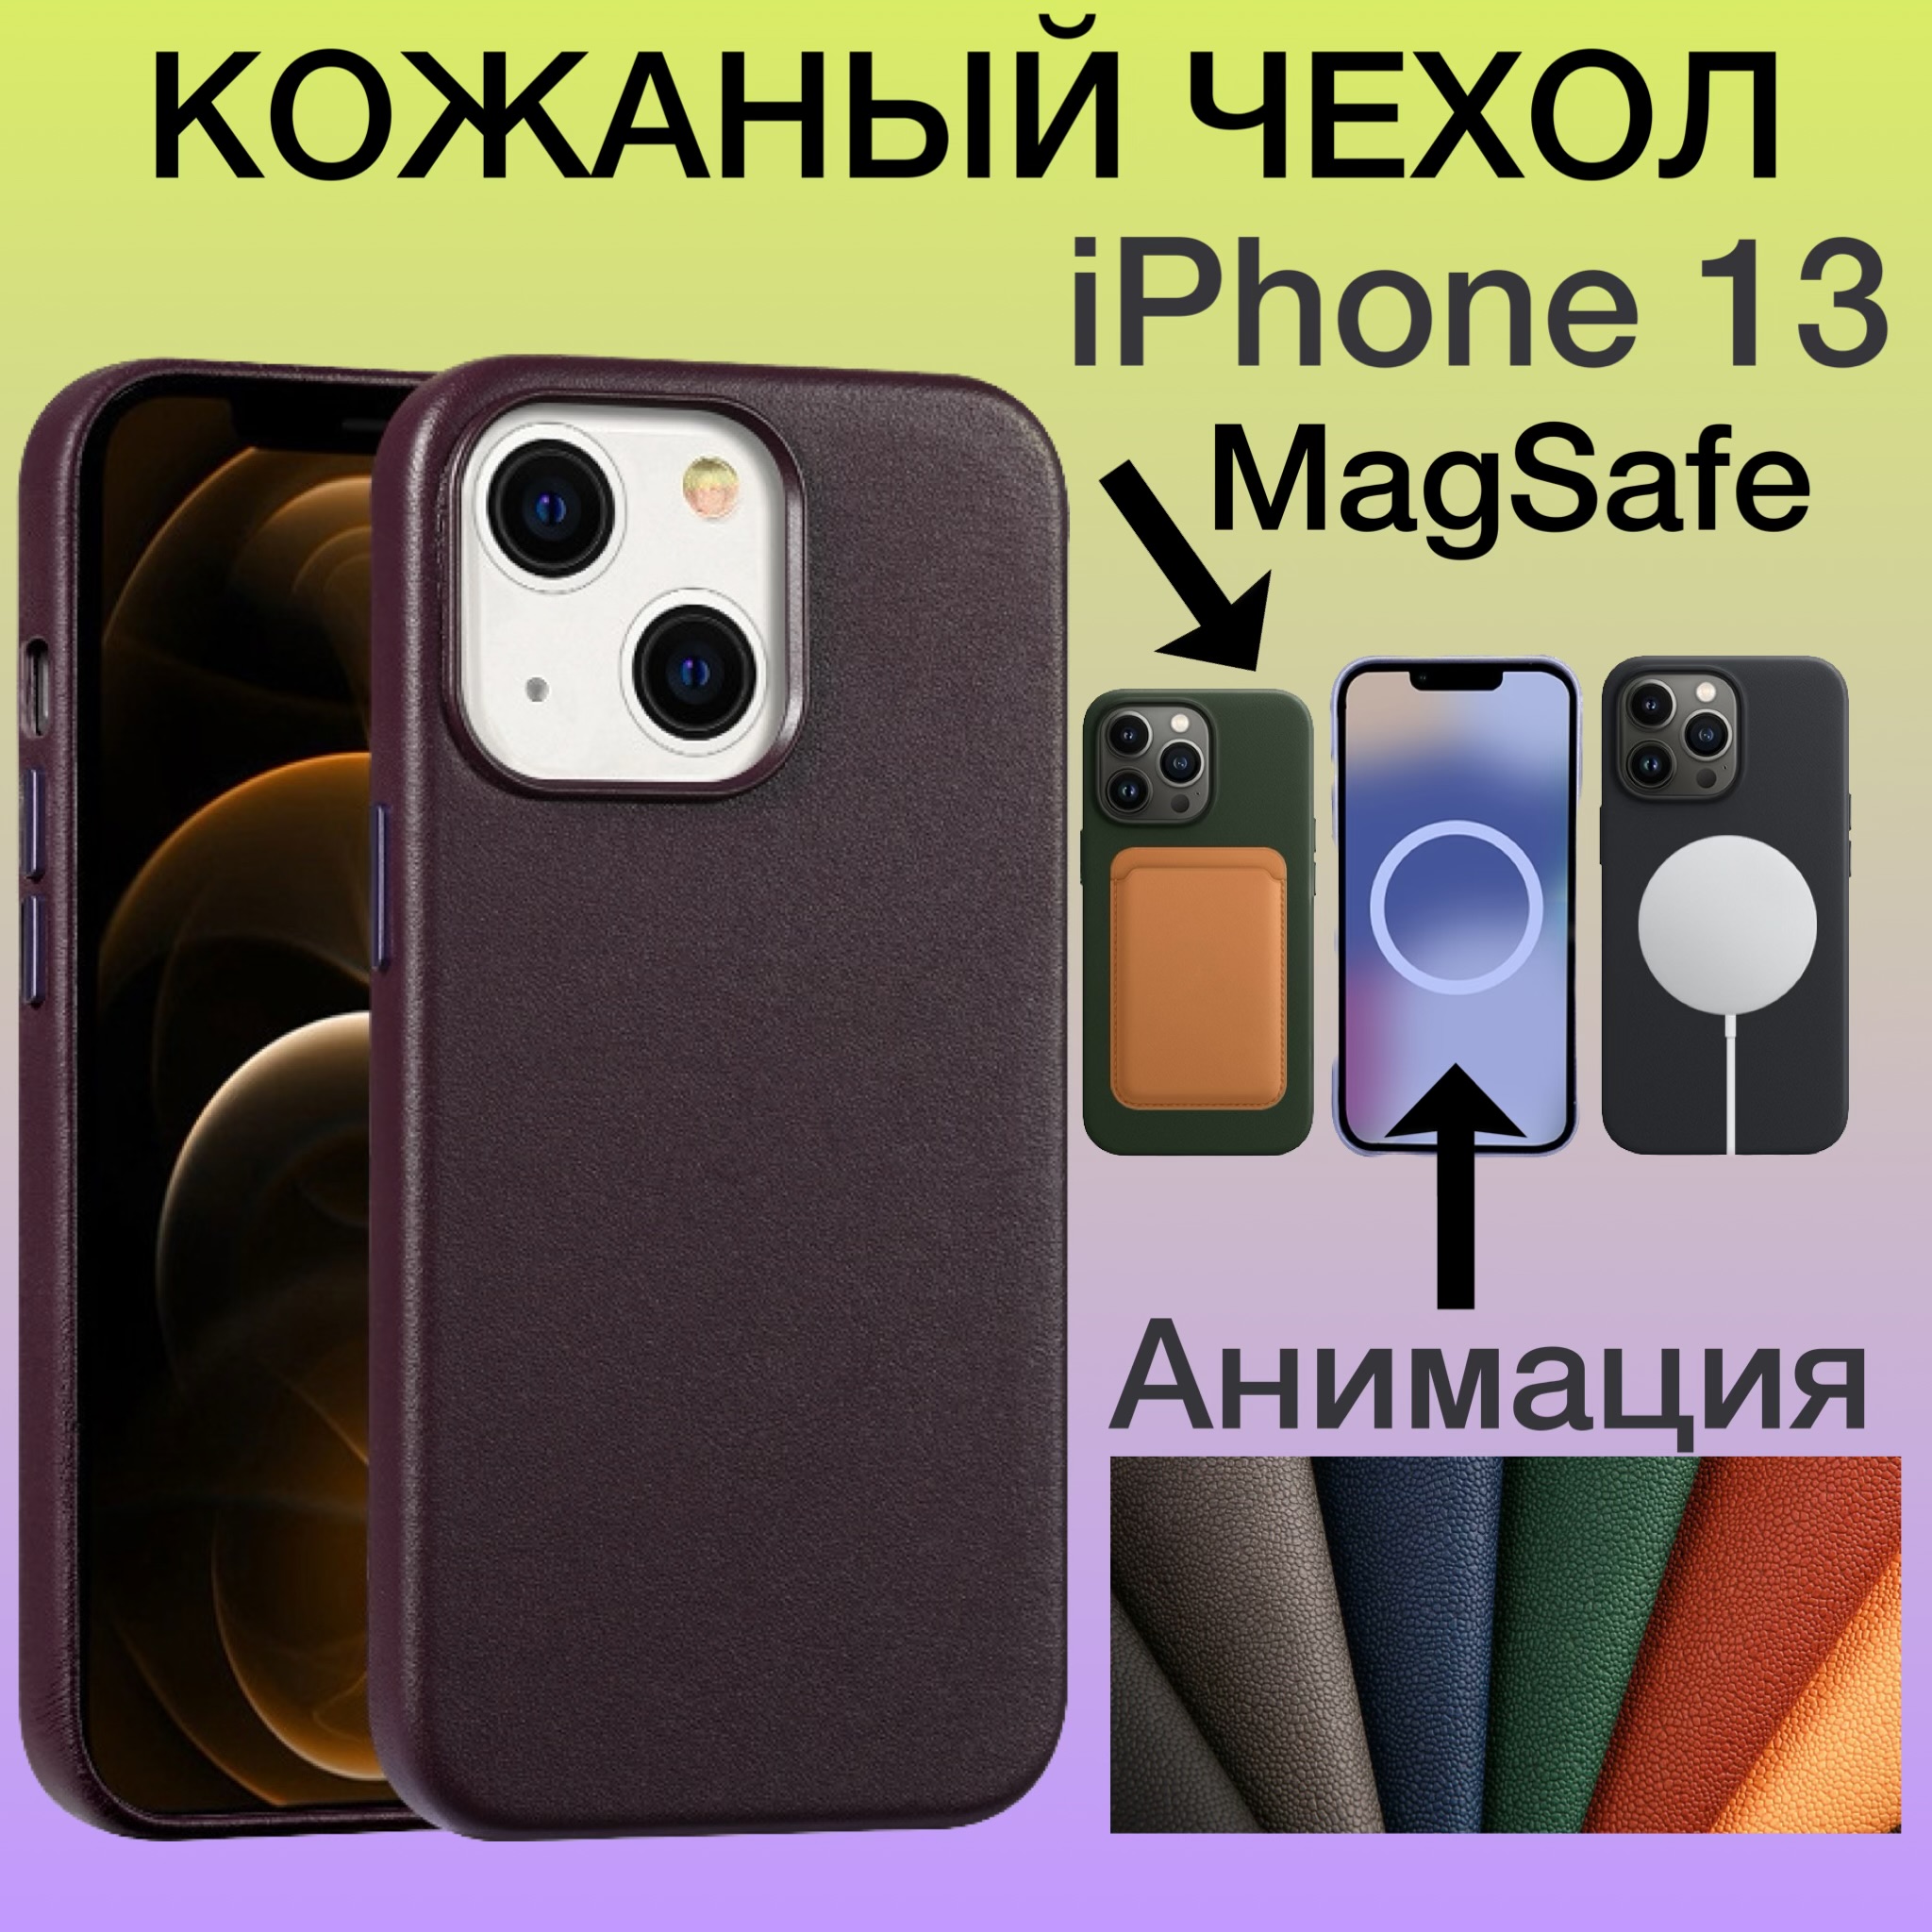 Кожаный чехол на iPhone 13 с MagSafe и Анимацией цвет бордовый